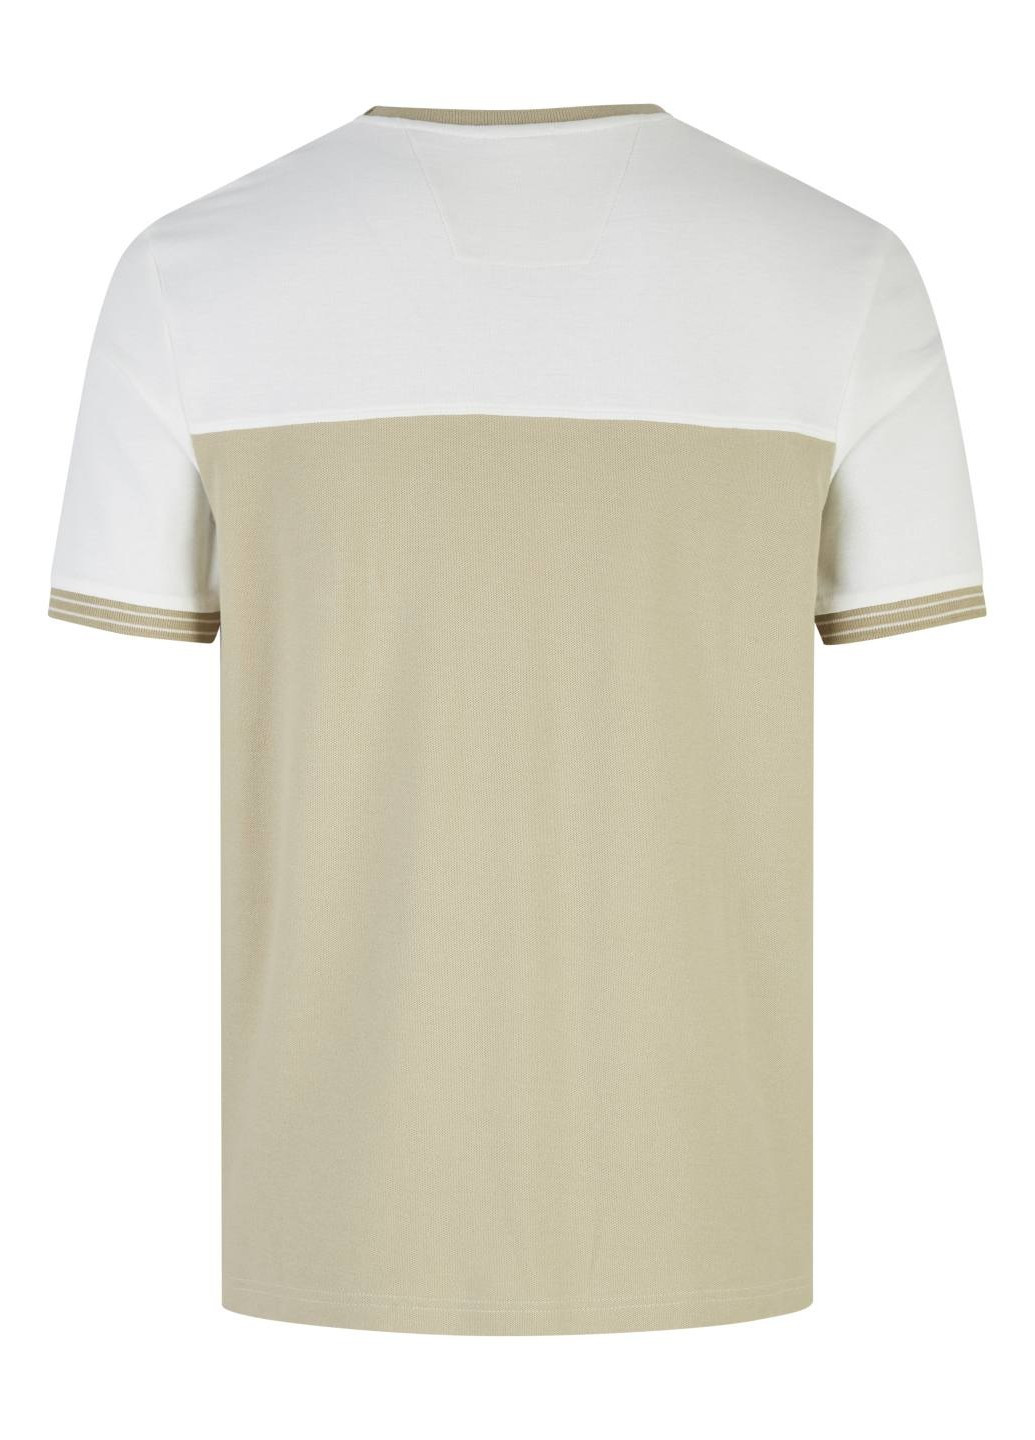 Комбинированная мужская футболка разные цвета Hechter